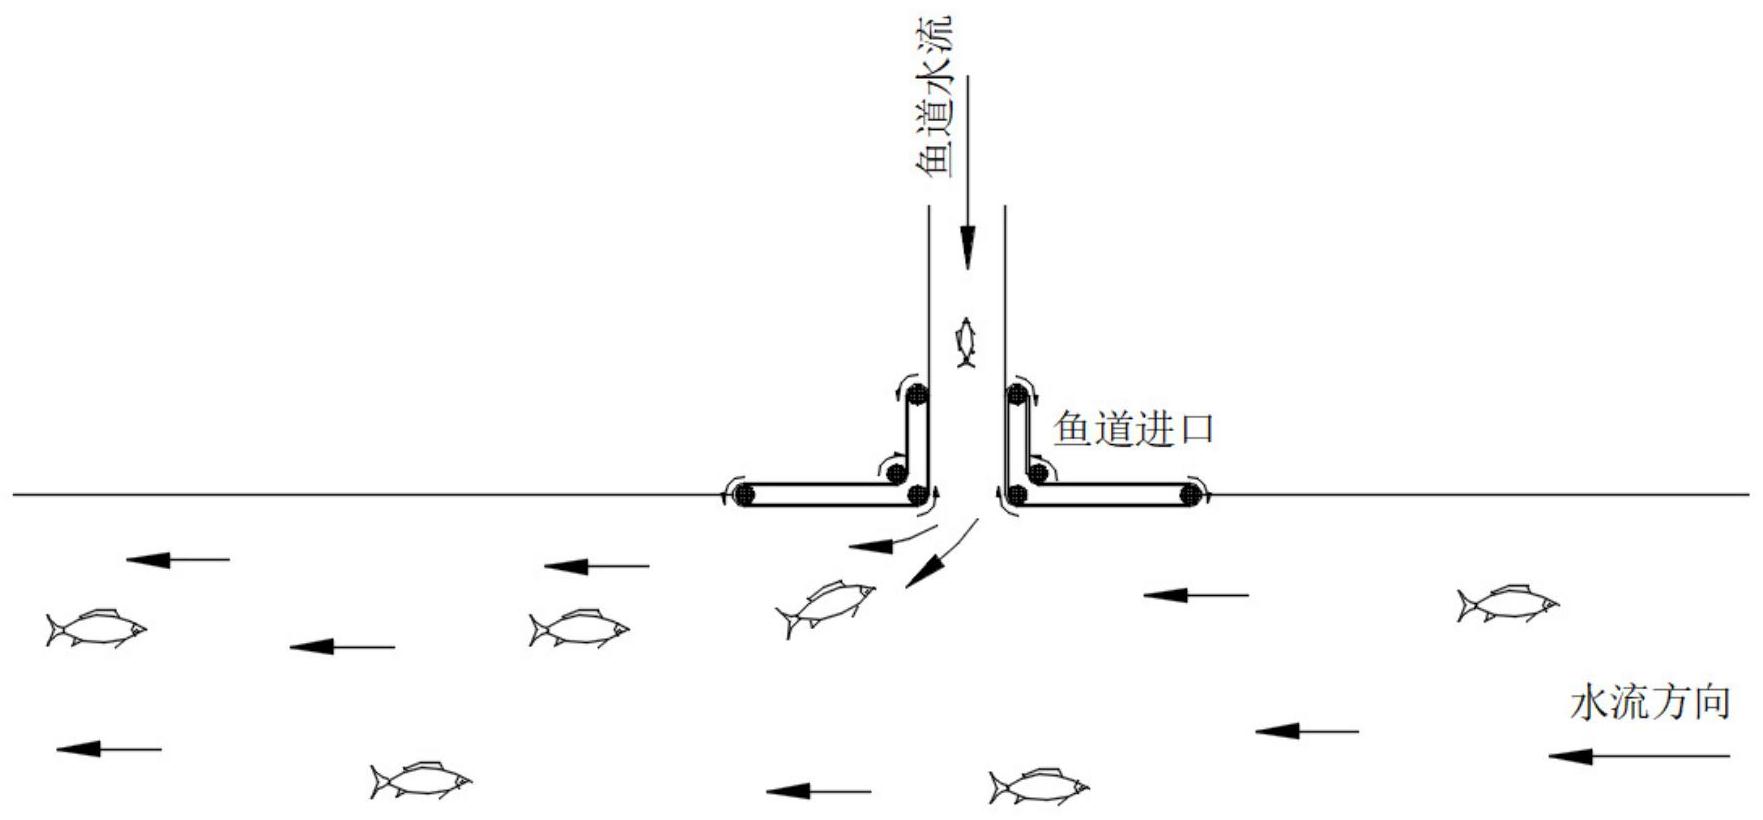 一种考虑鱼类视觉运动反应的鱼道进口诱鱼方法